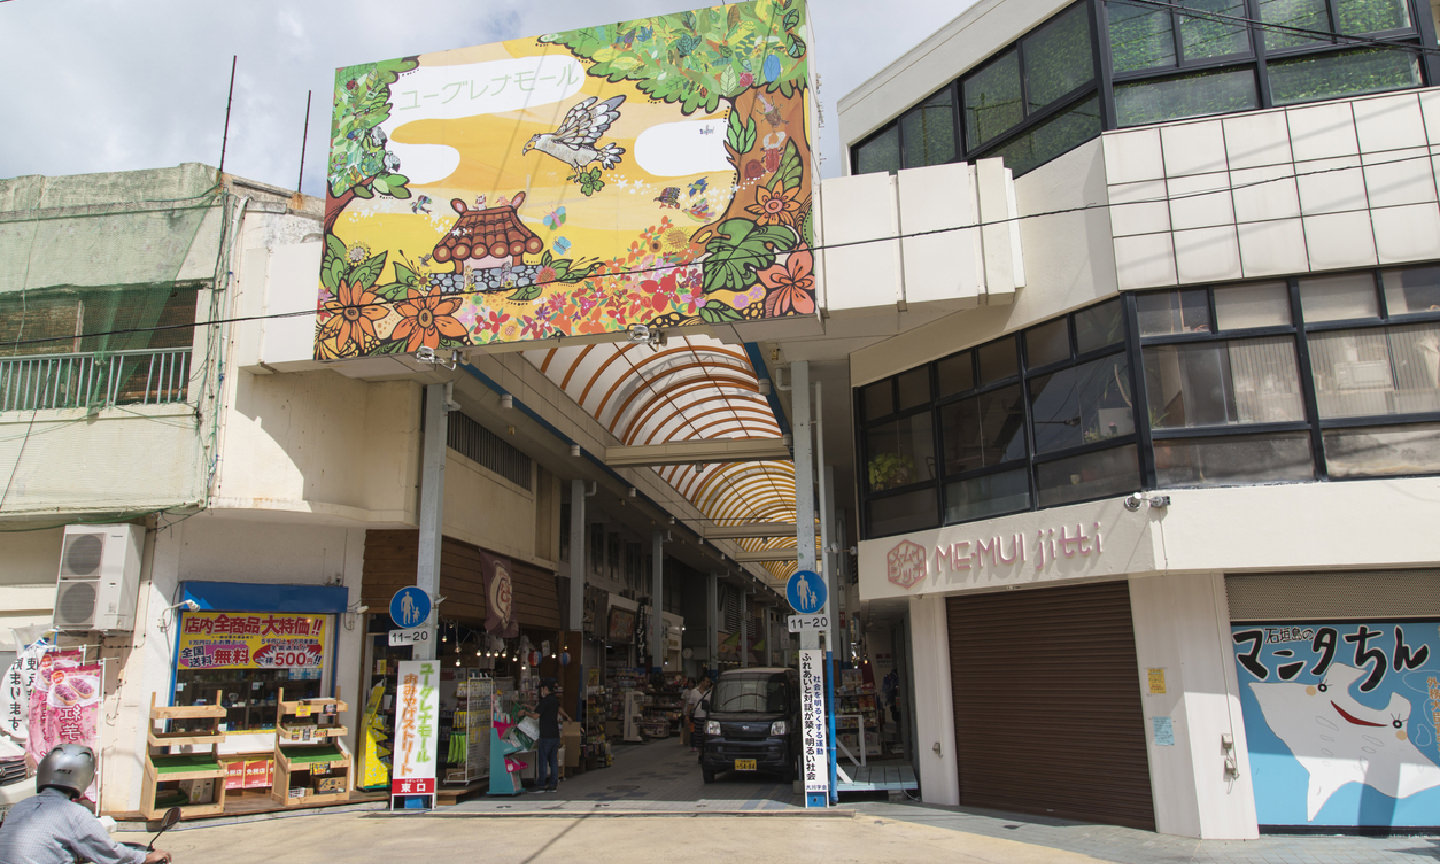 石垣島・日本最南端のアーケード街“ユーグレナモール”